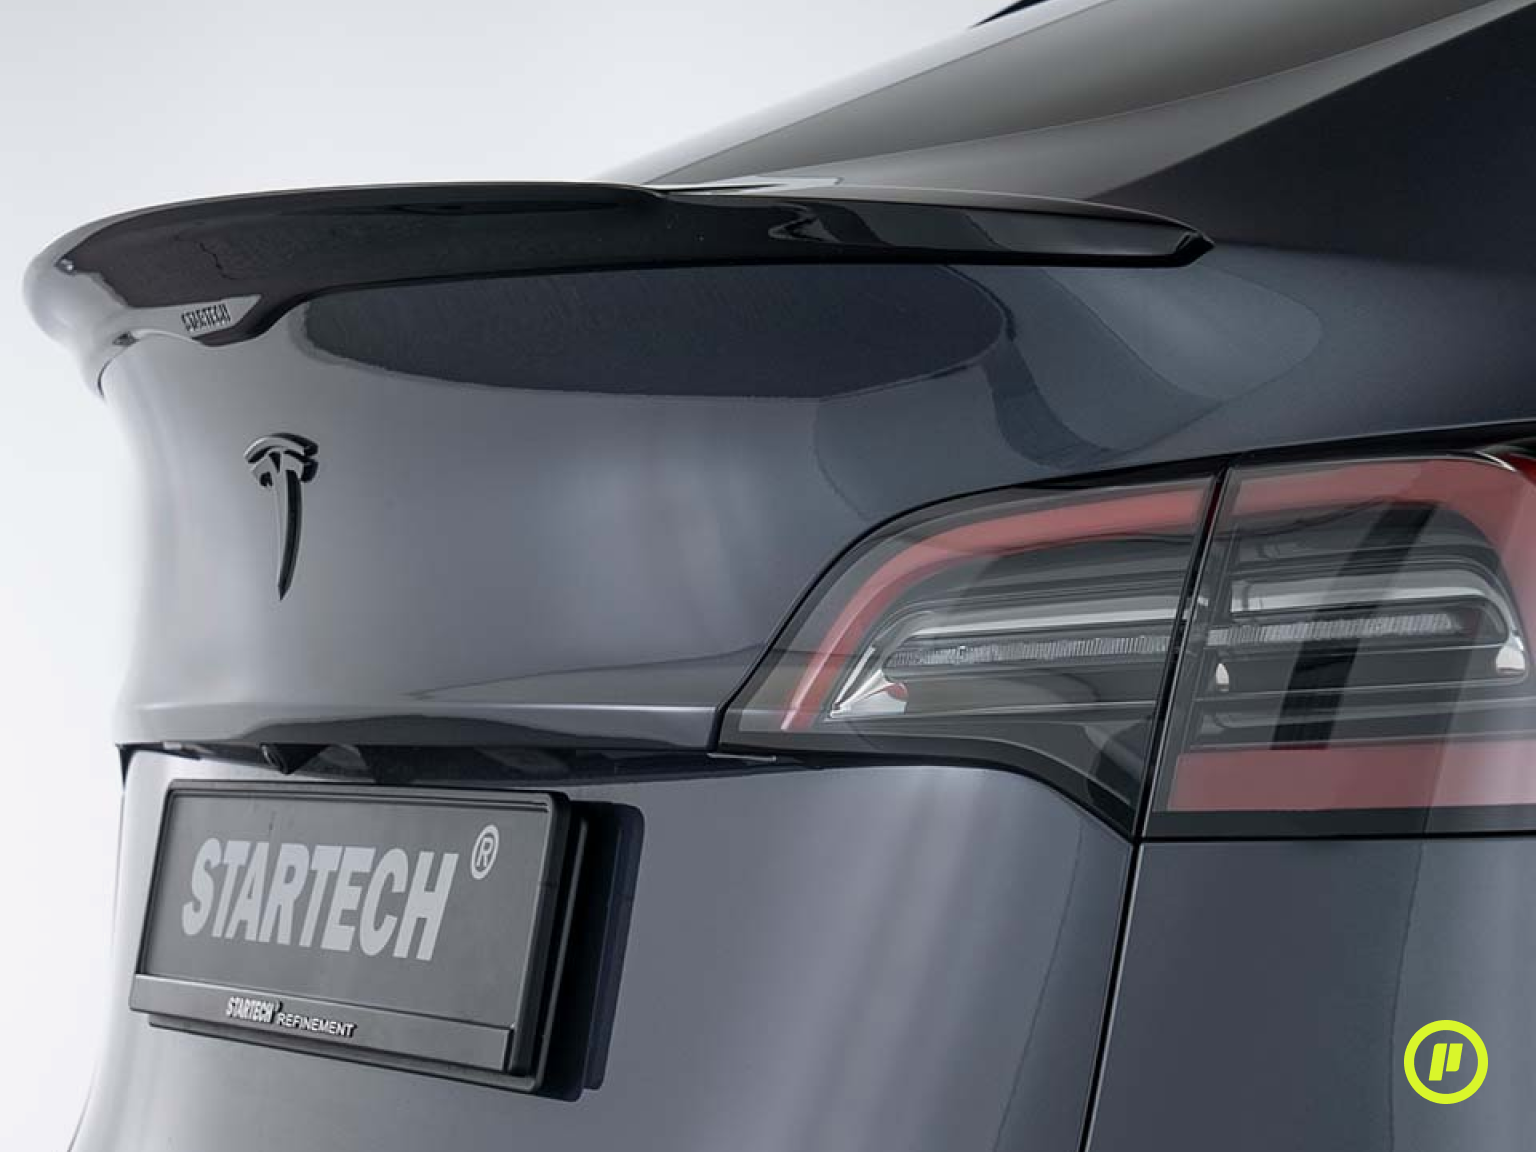 Startech Rear Spoiler for Tesla Model Y (2020+)